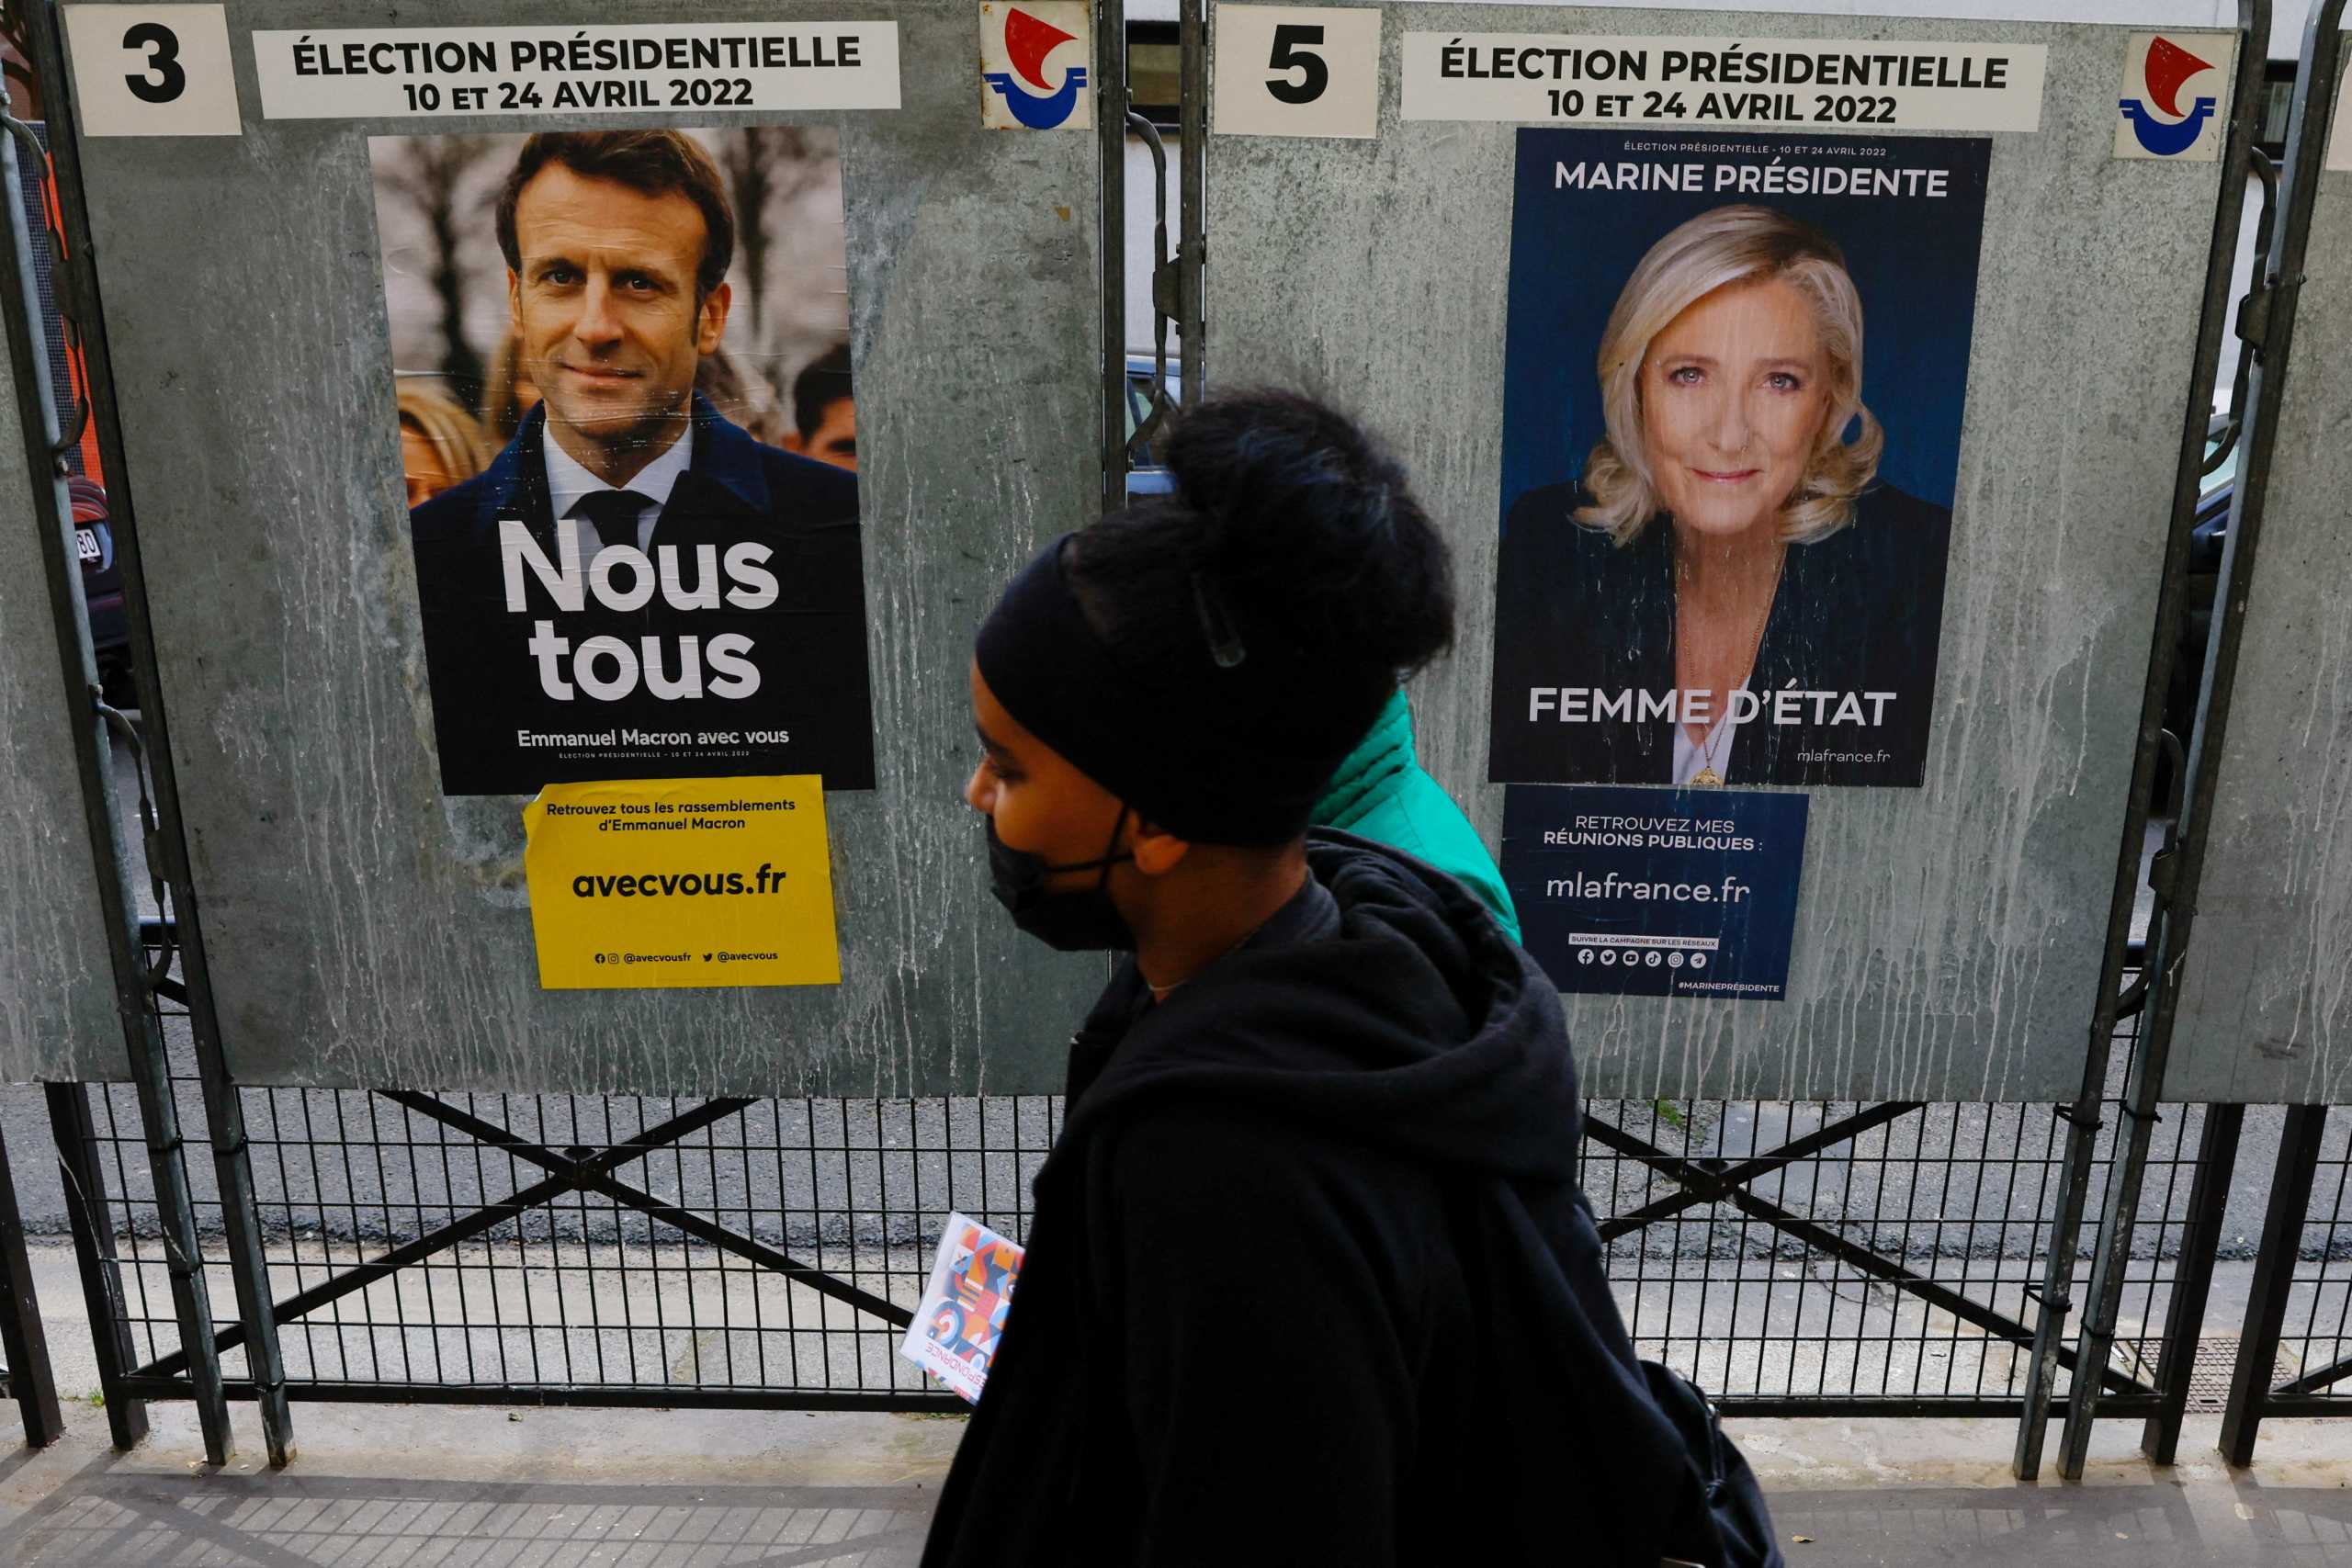 Γαλλία – Προεδρικές εκλογές: Αδιαφιλονίκητο φαβορί ο Εμάνουελ Μακρόν σε όλες τις δημοσκοπήσεις